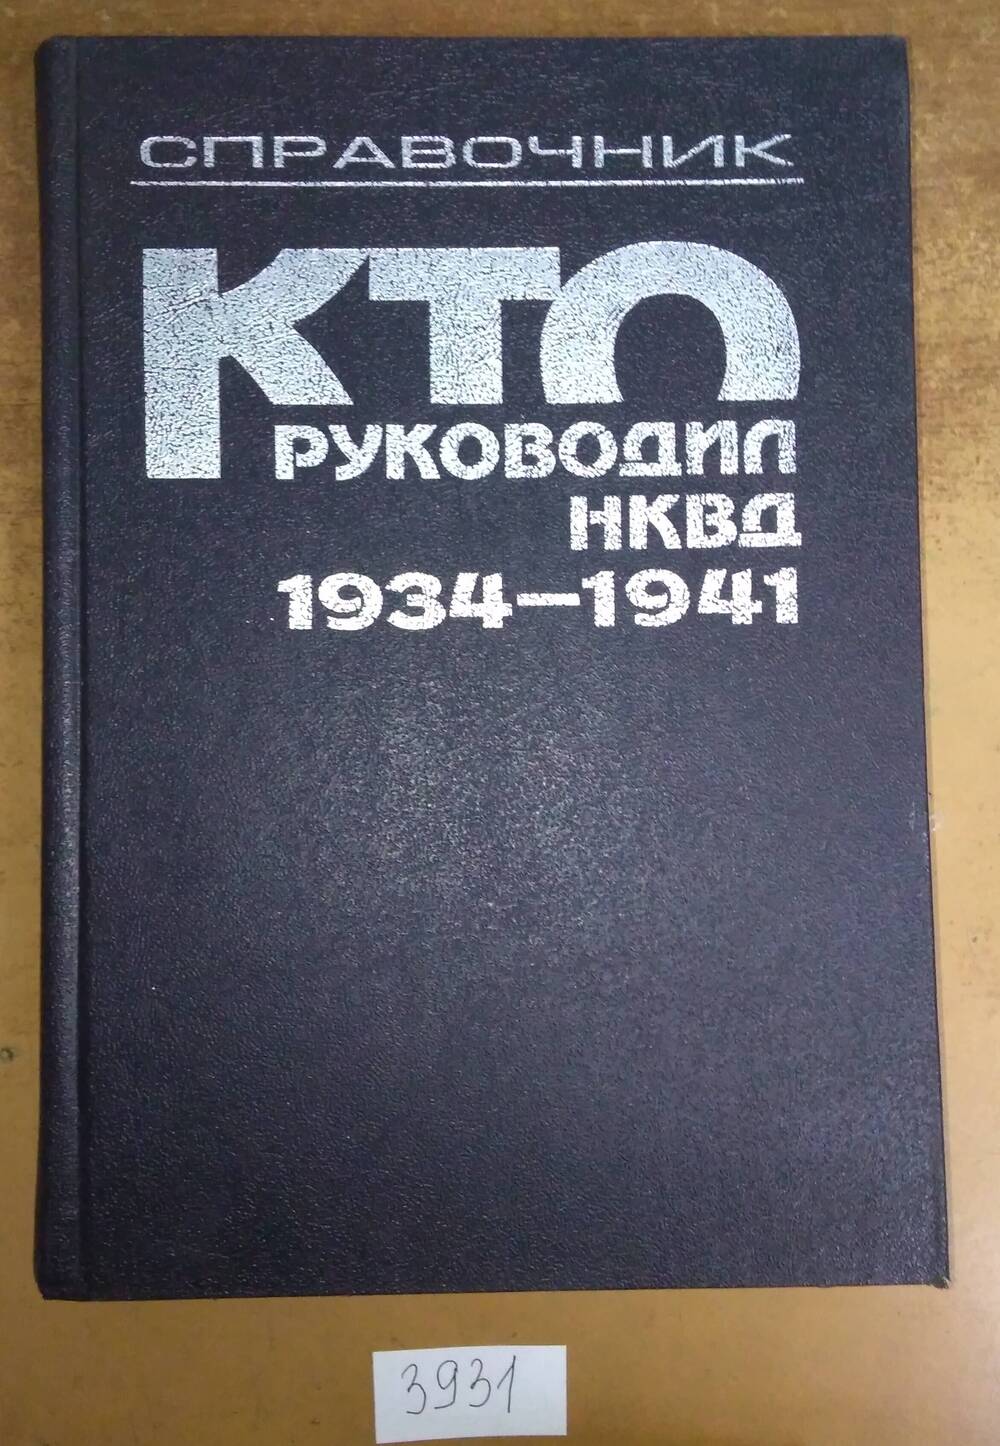 Книга печатная. Справочник. Кто руководил НКВД 1934 - 1941.